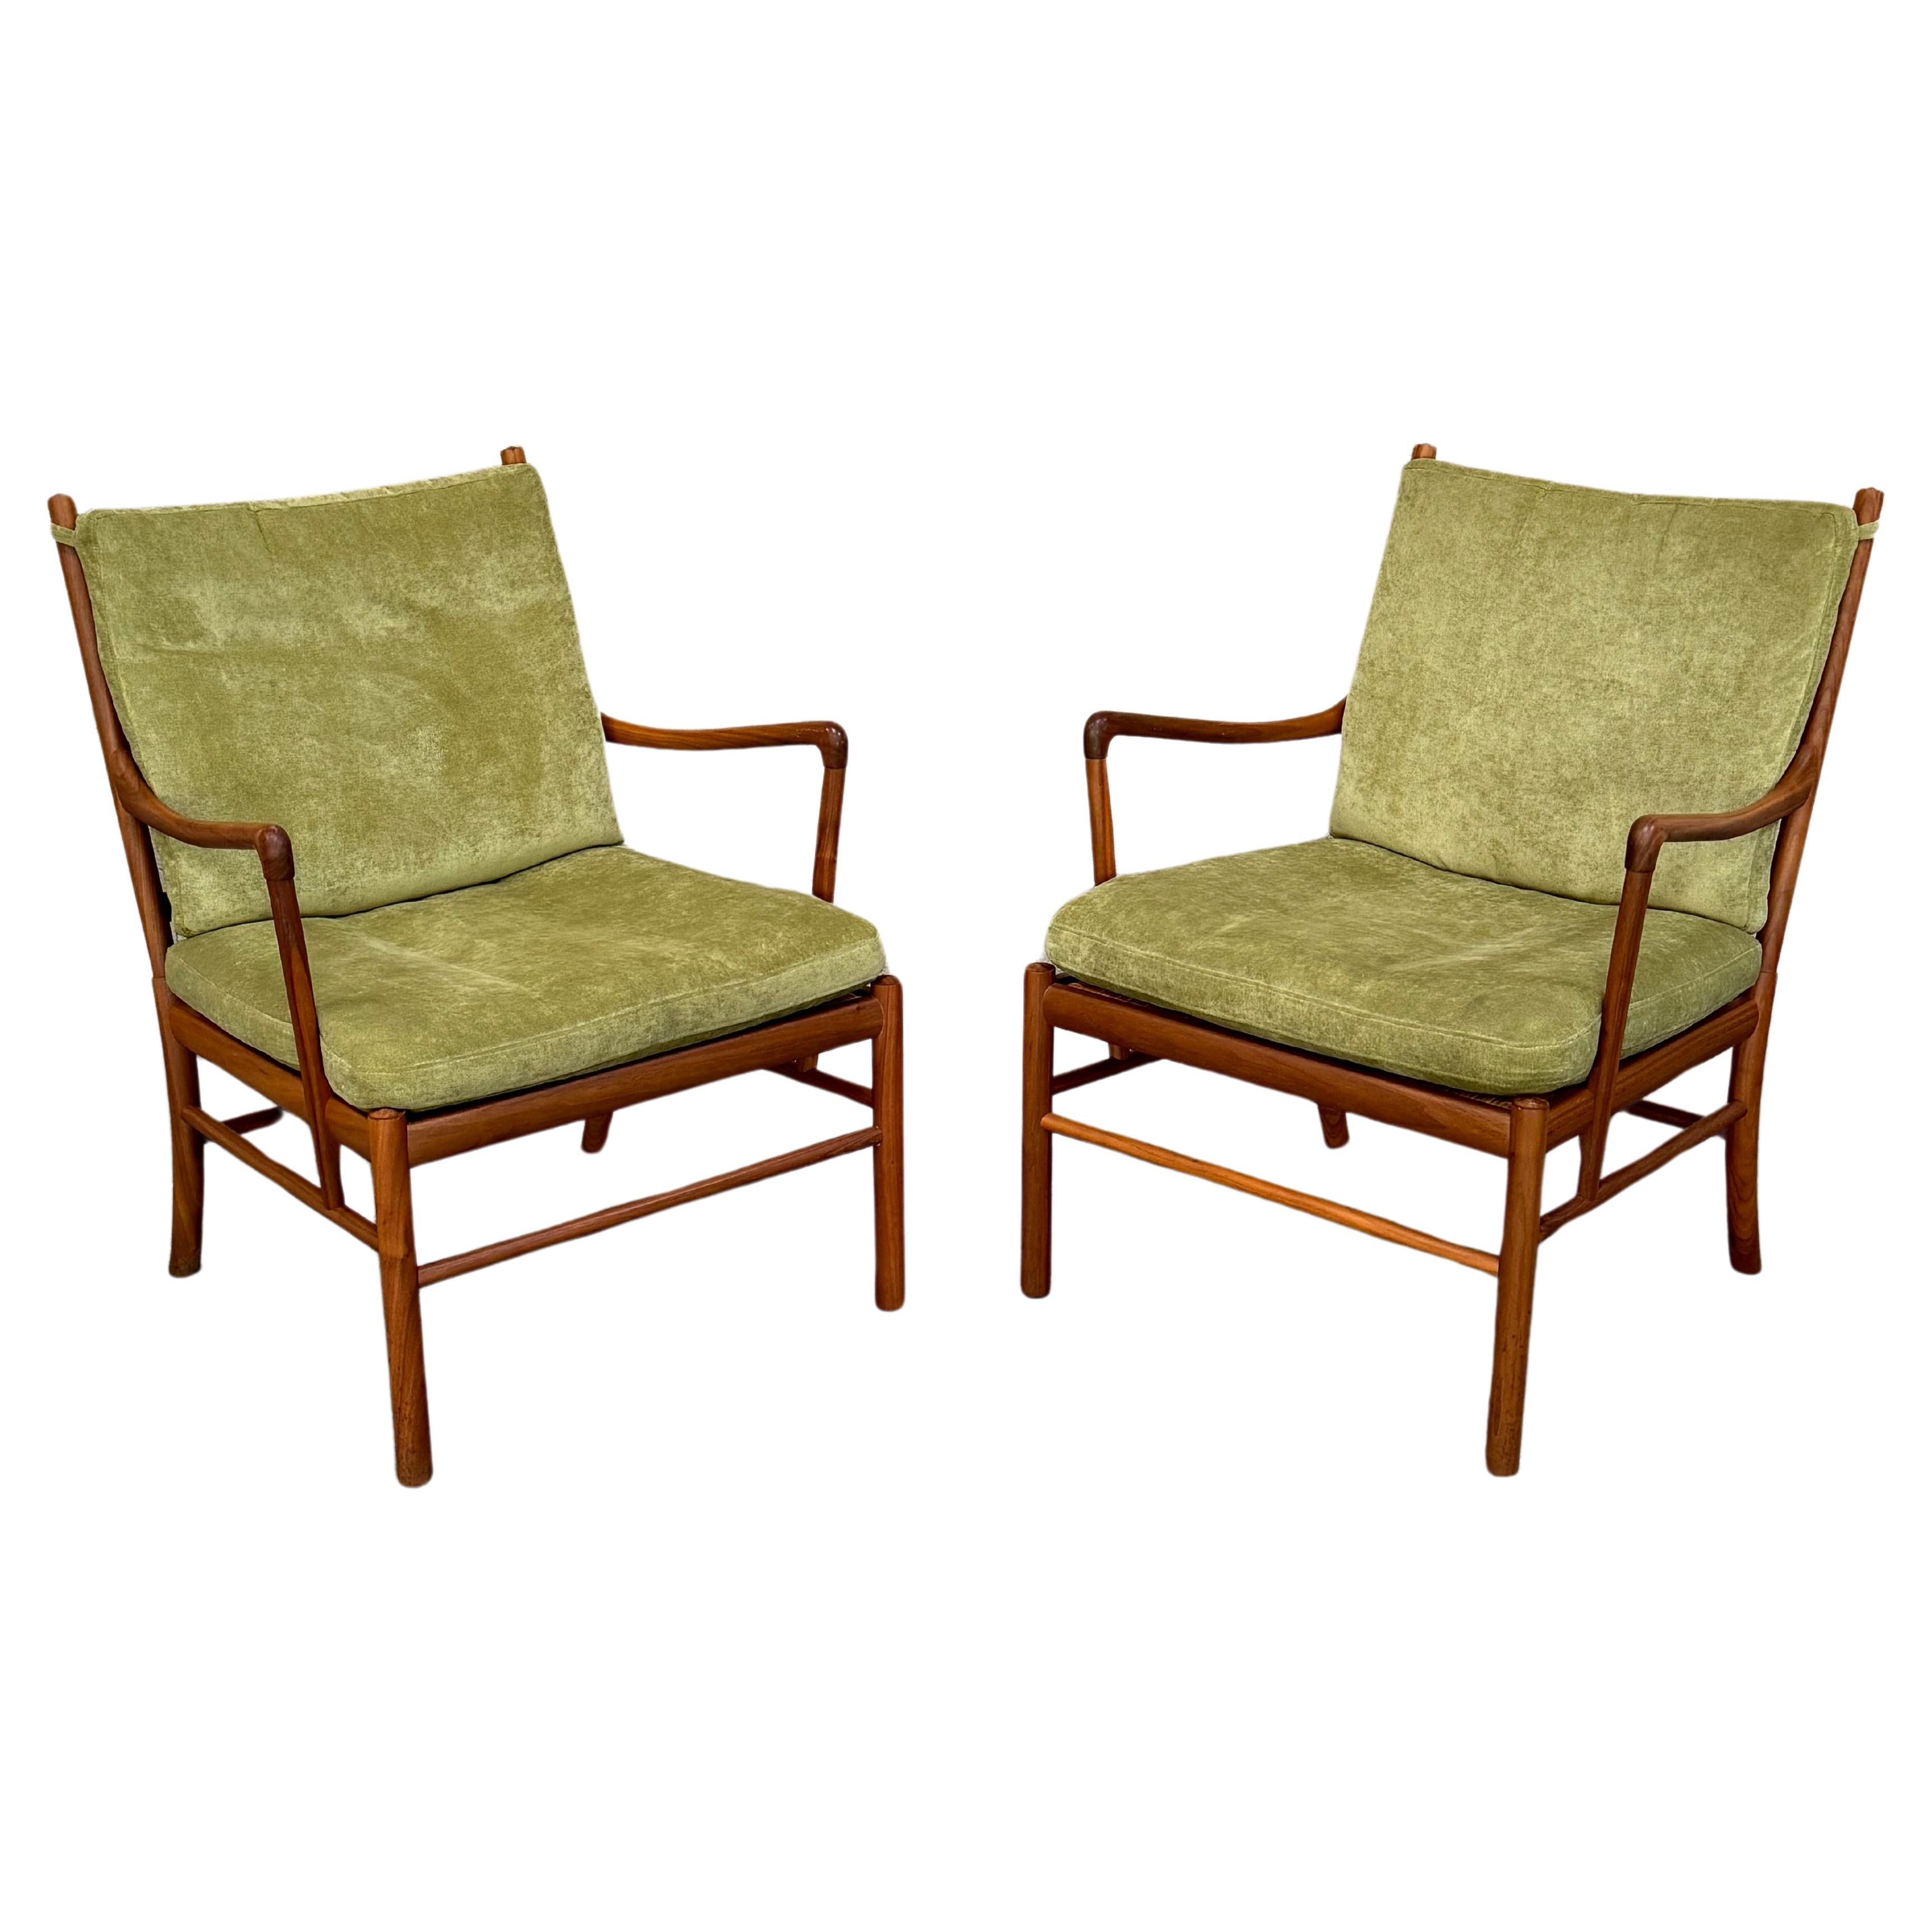 Paire de fauteuils coloniaux Ole Wanscher, modèle 149